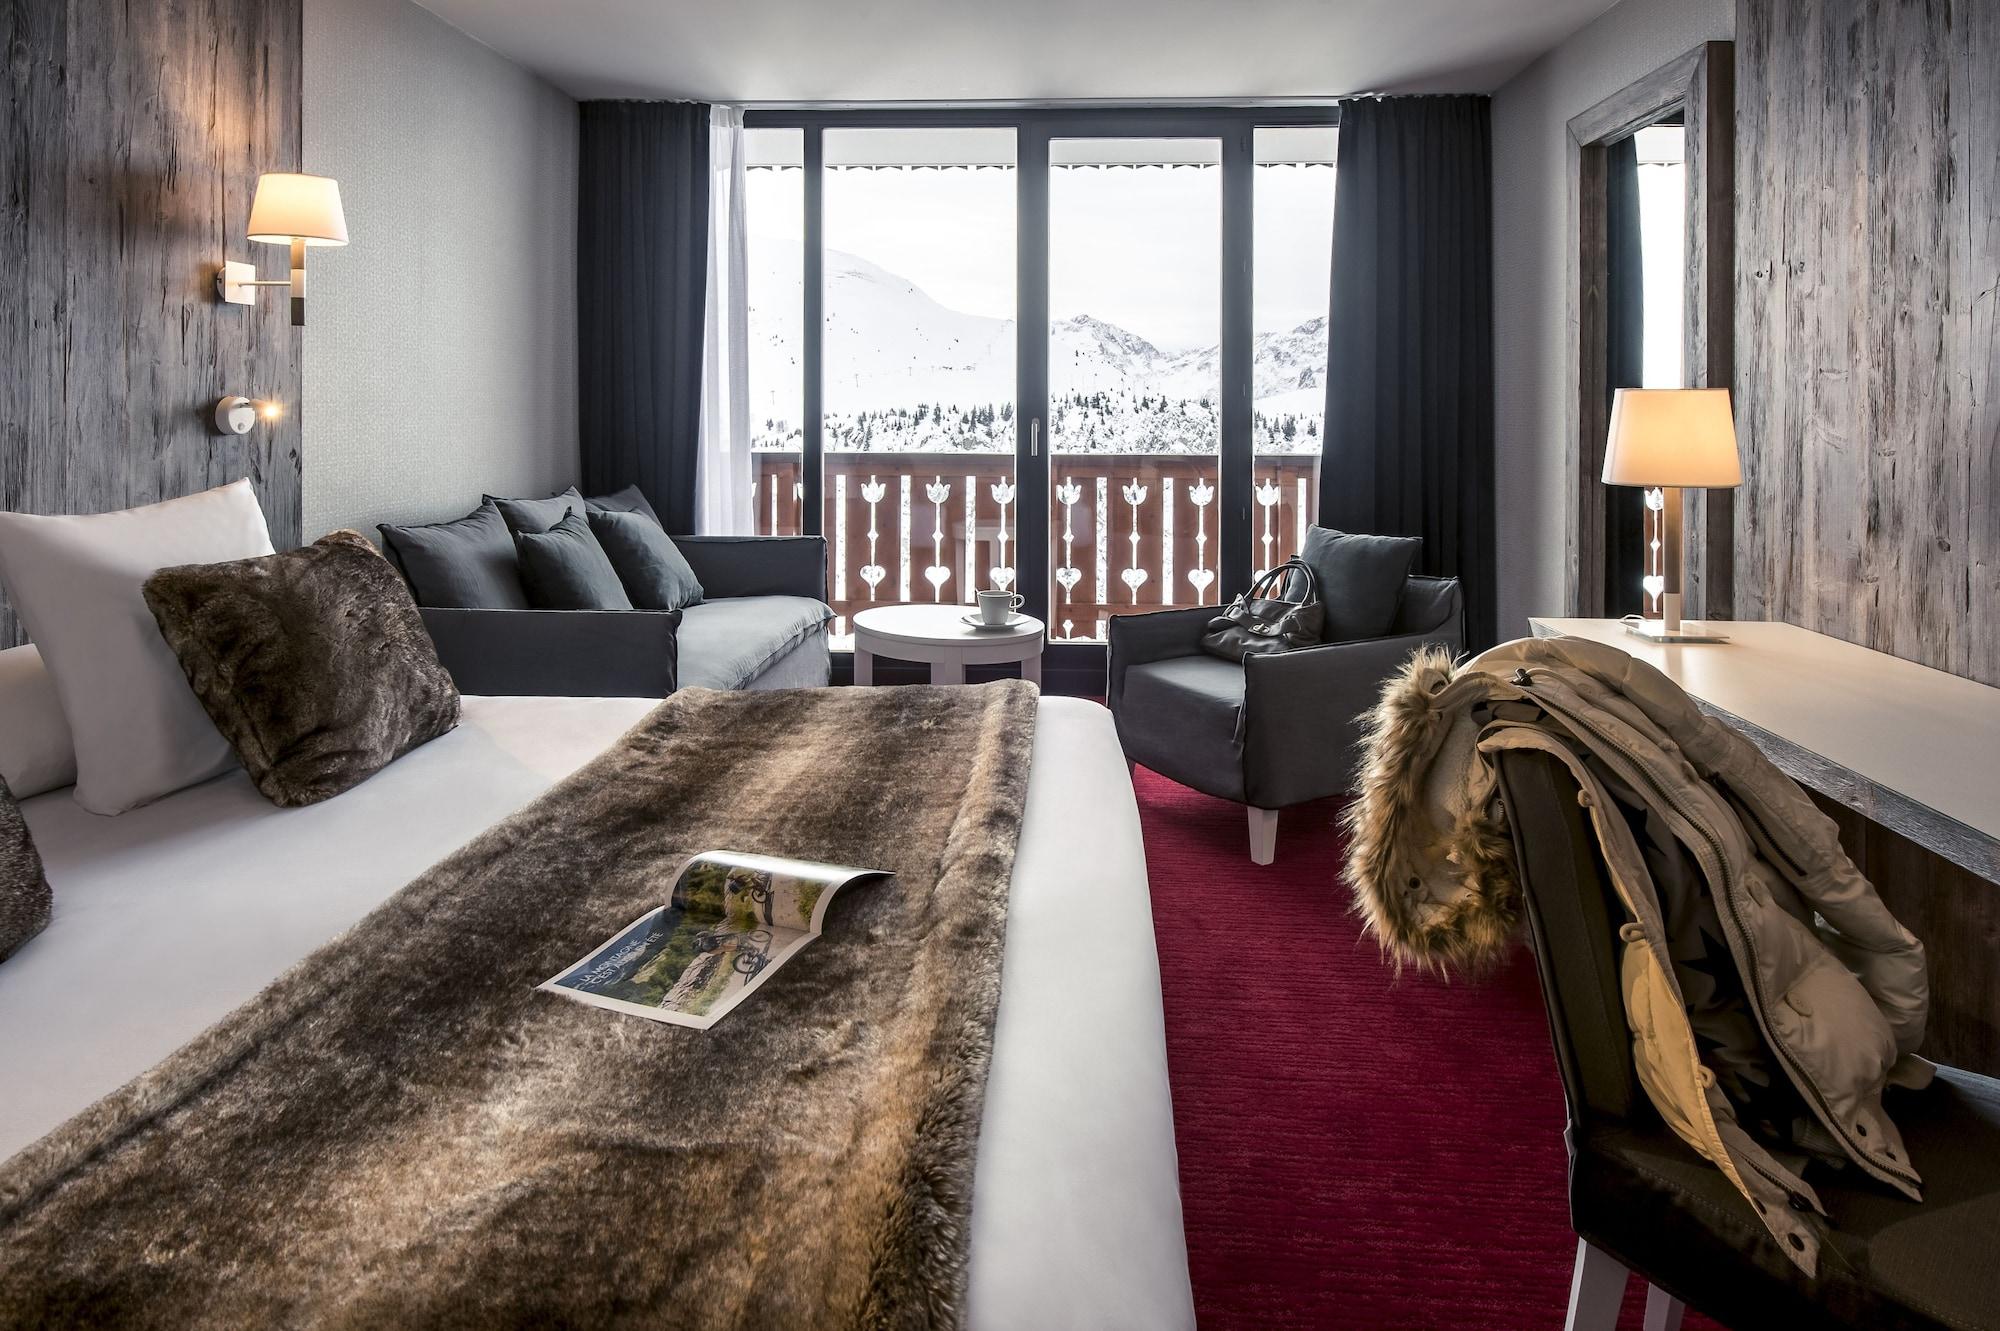 Le Pic Blanc Hotel Alpe d'Huez Exterior foto